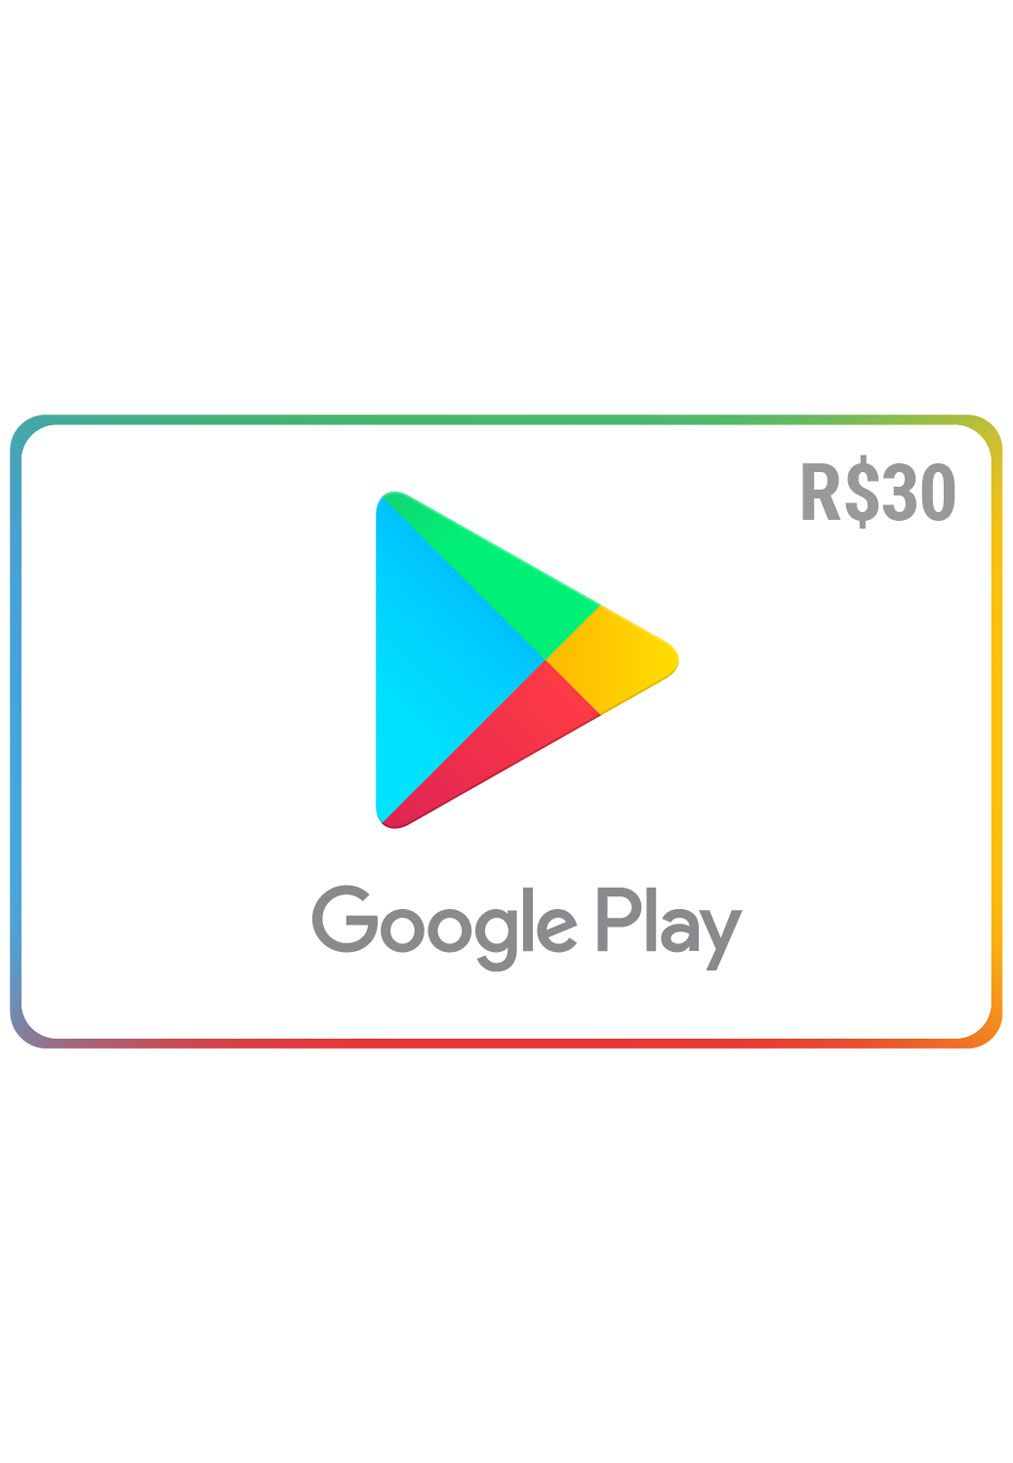 Comprar Gift Card Digital Google Play R 30 Recarga Zero3games - como comprar robux sem cartao